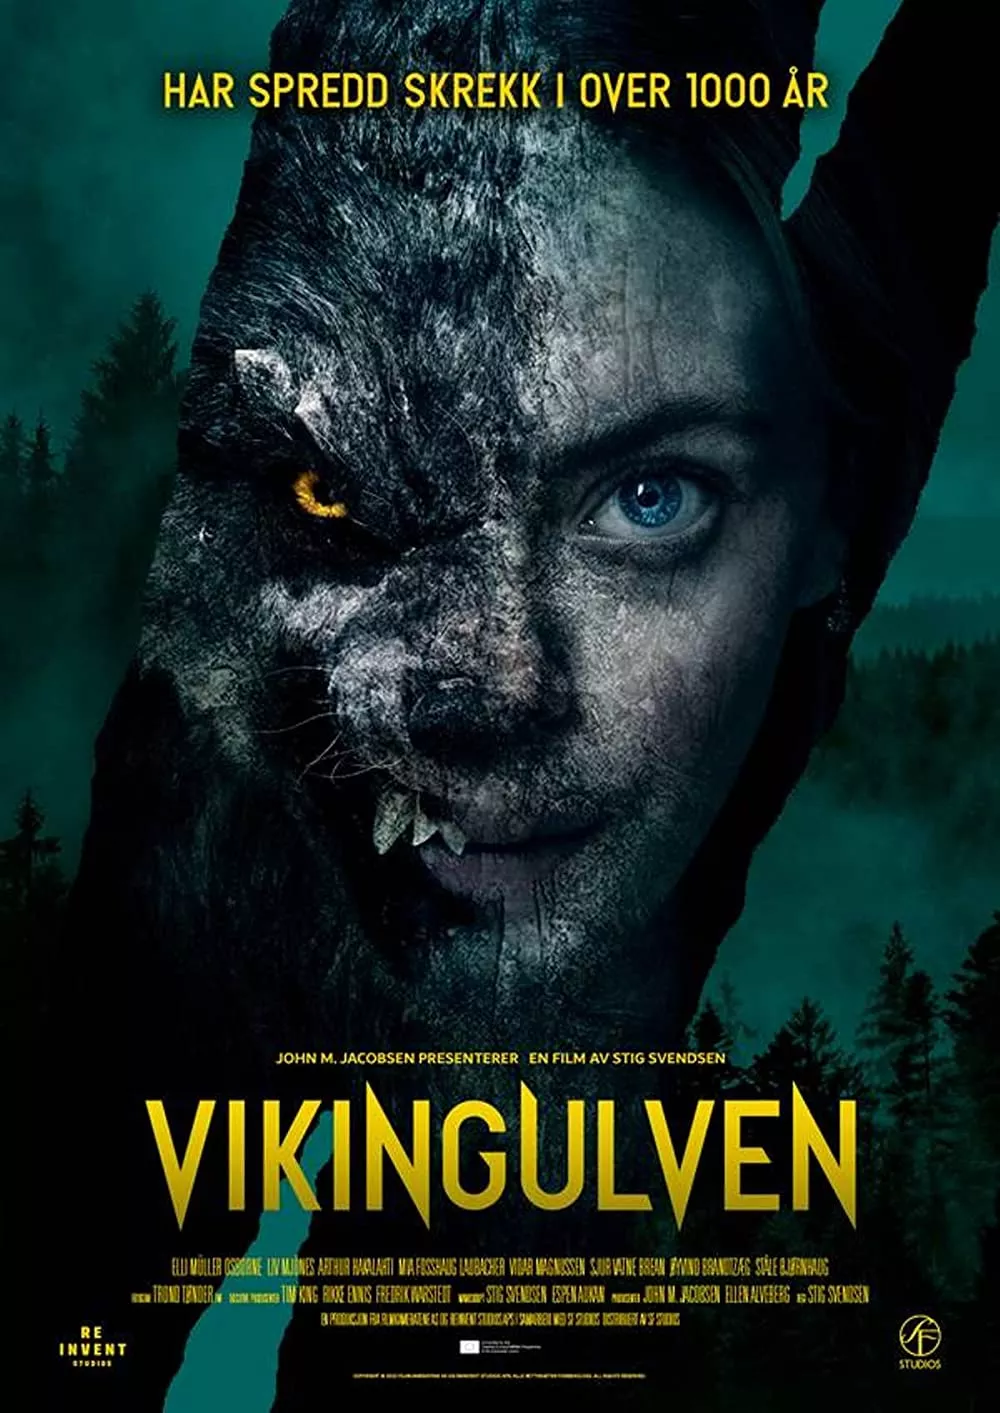 Vikingulven | TRAILER